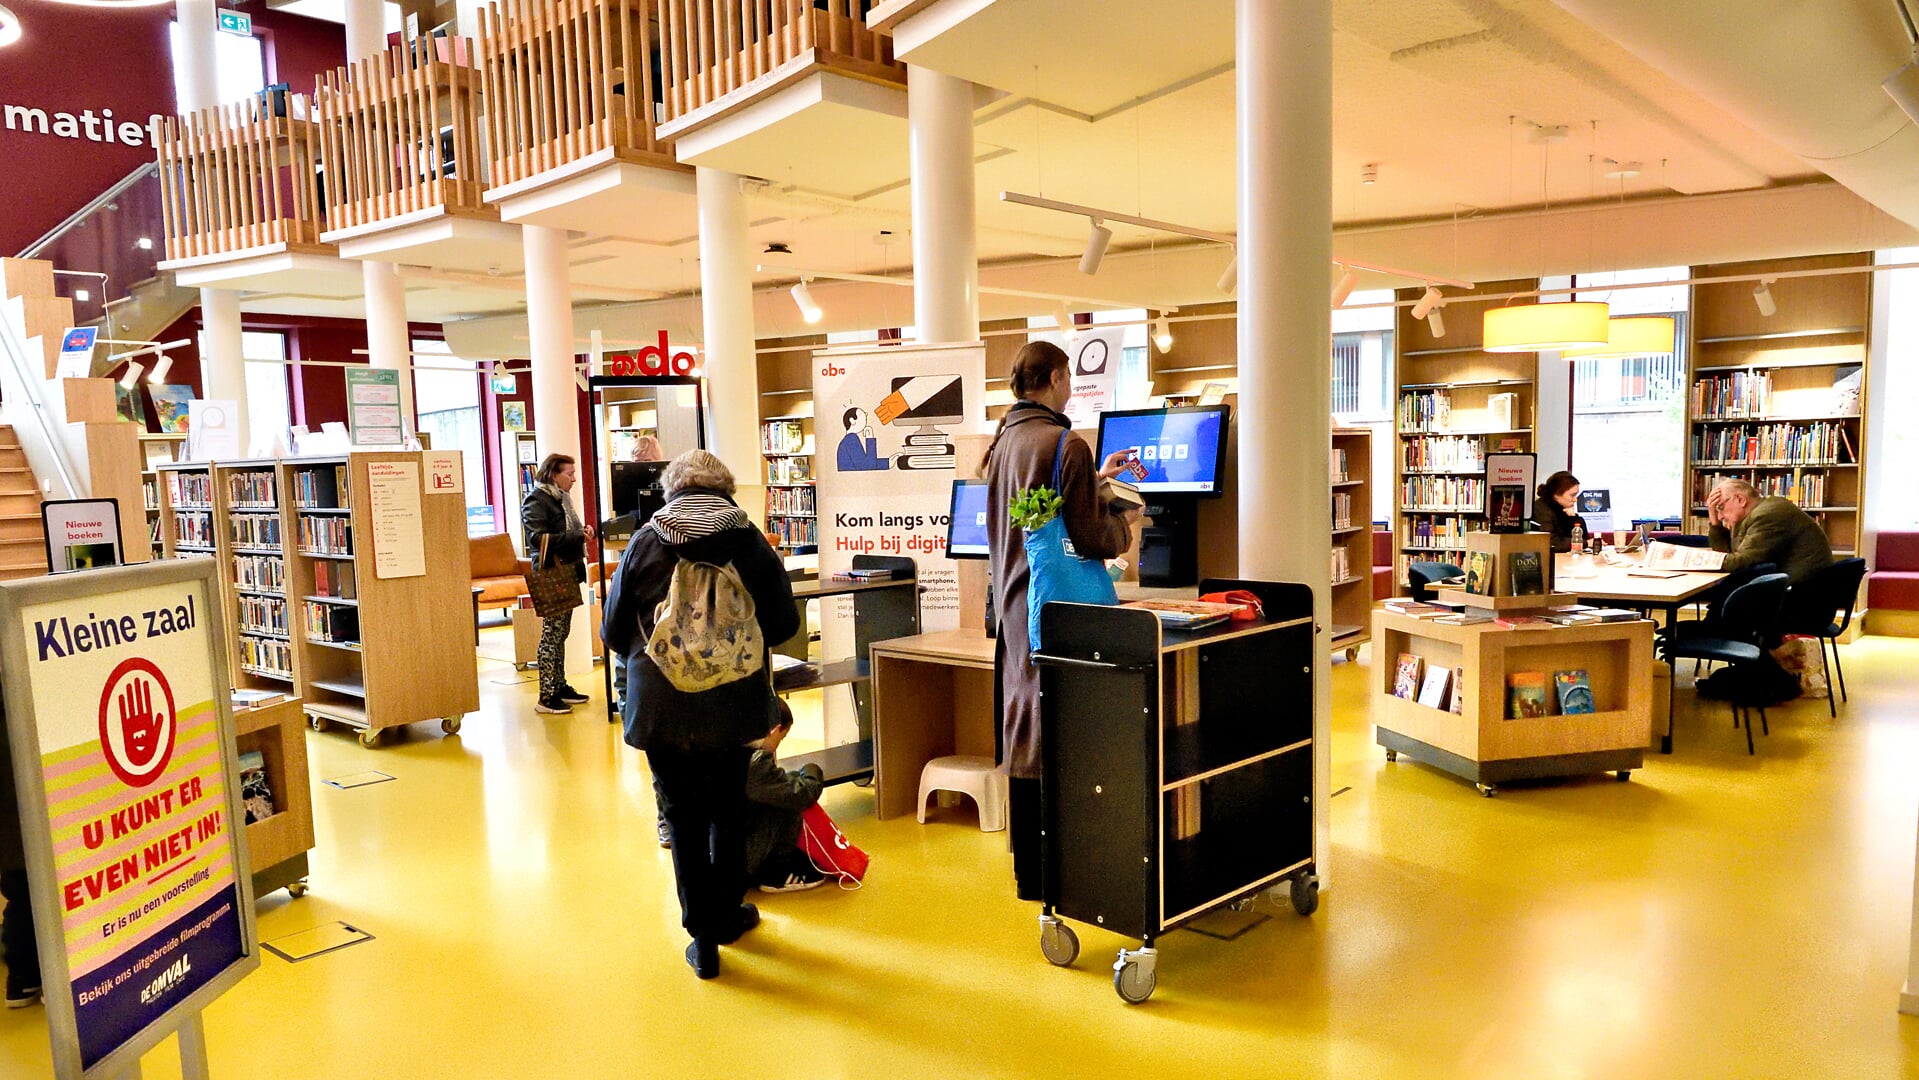 De openbare bibliotheek in De Omval.